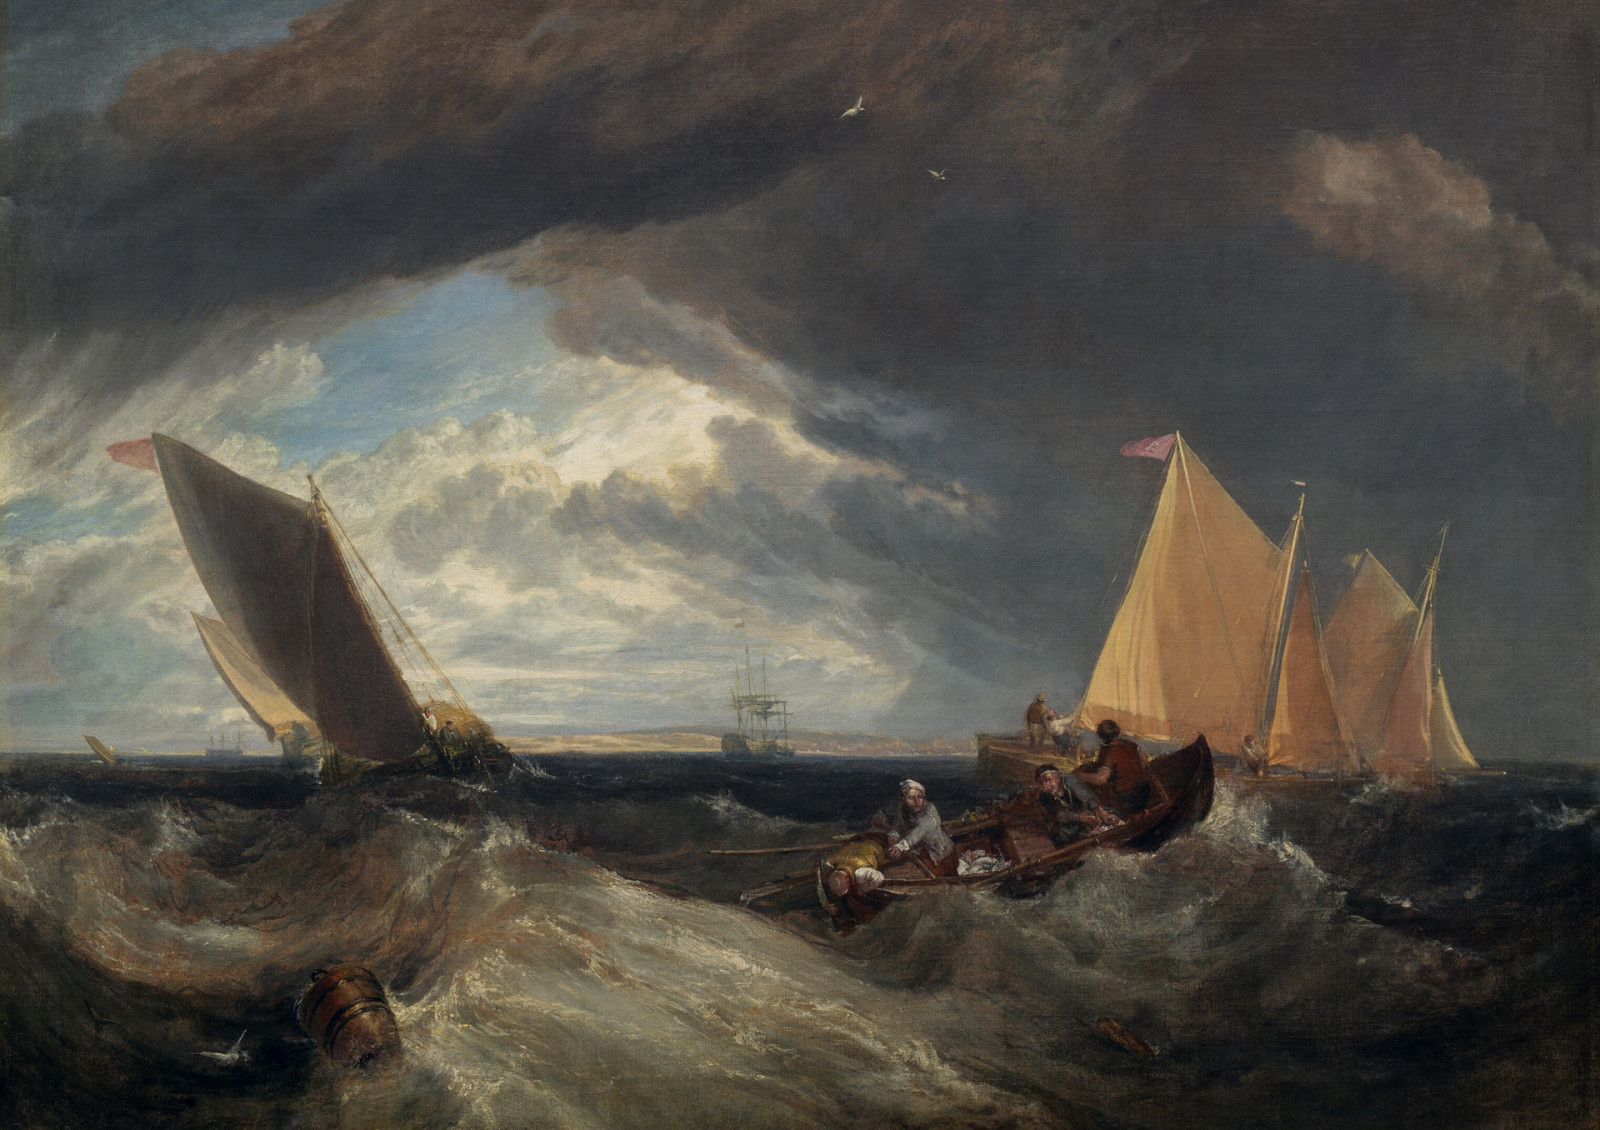 川, 風景, 画像, ボート, 帆, ウィリアム・ターナー